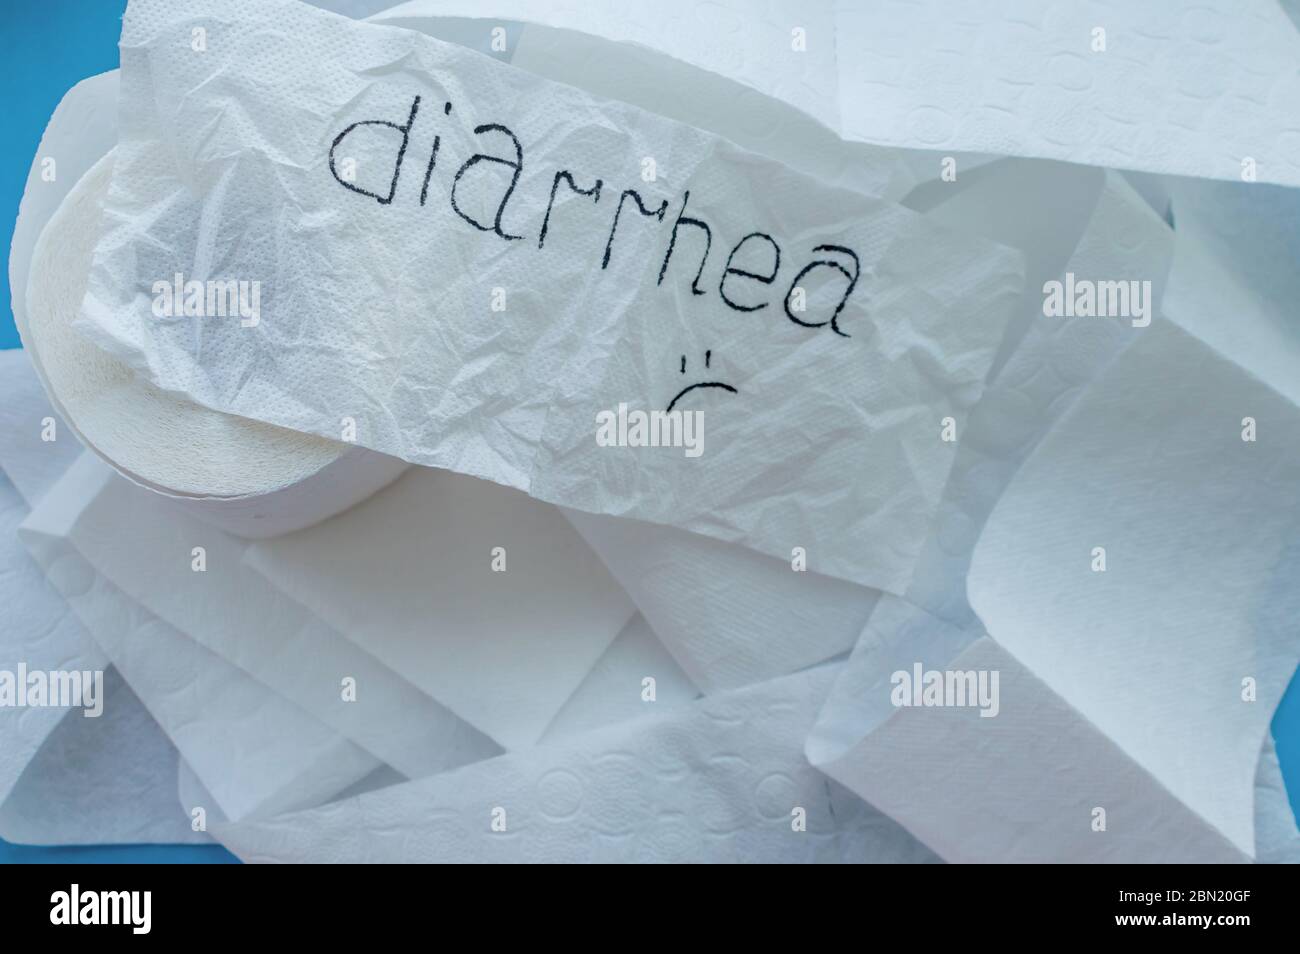 Rotoli di carta igienica bianca etichettata 'diarrea' su sfondo blu. Primo piano. Foto Stock